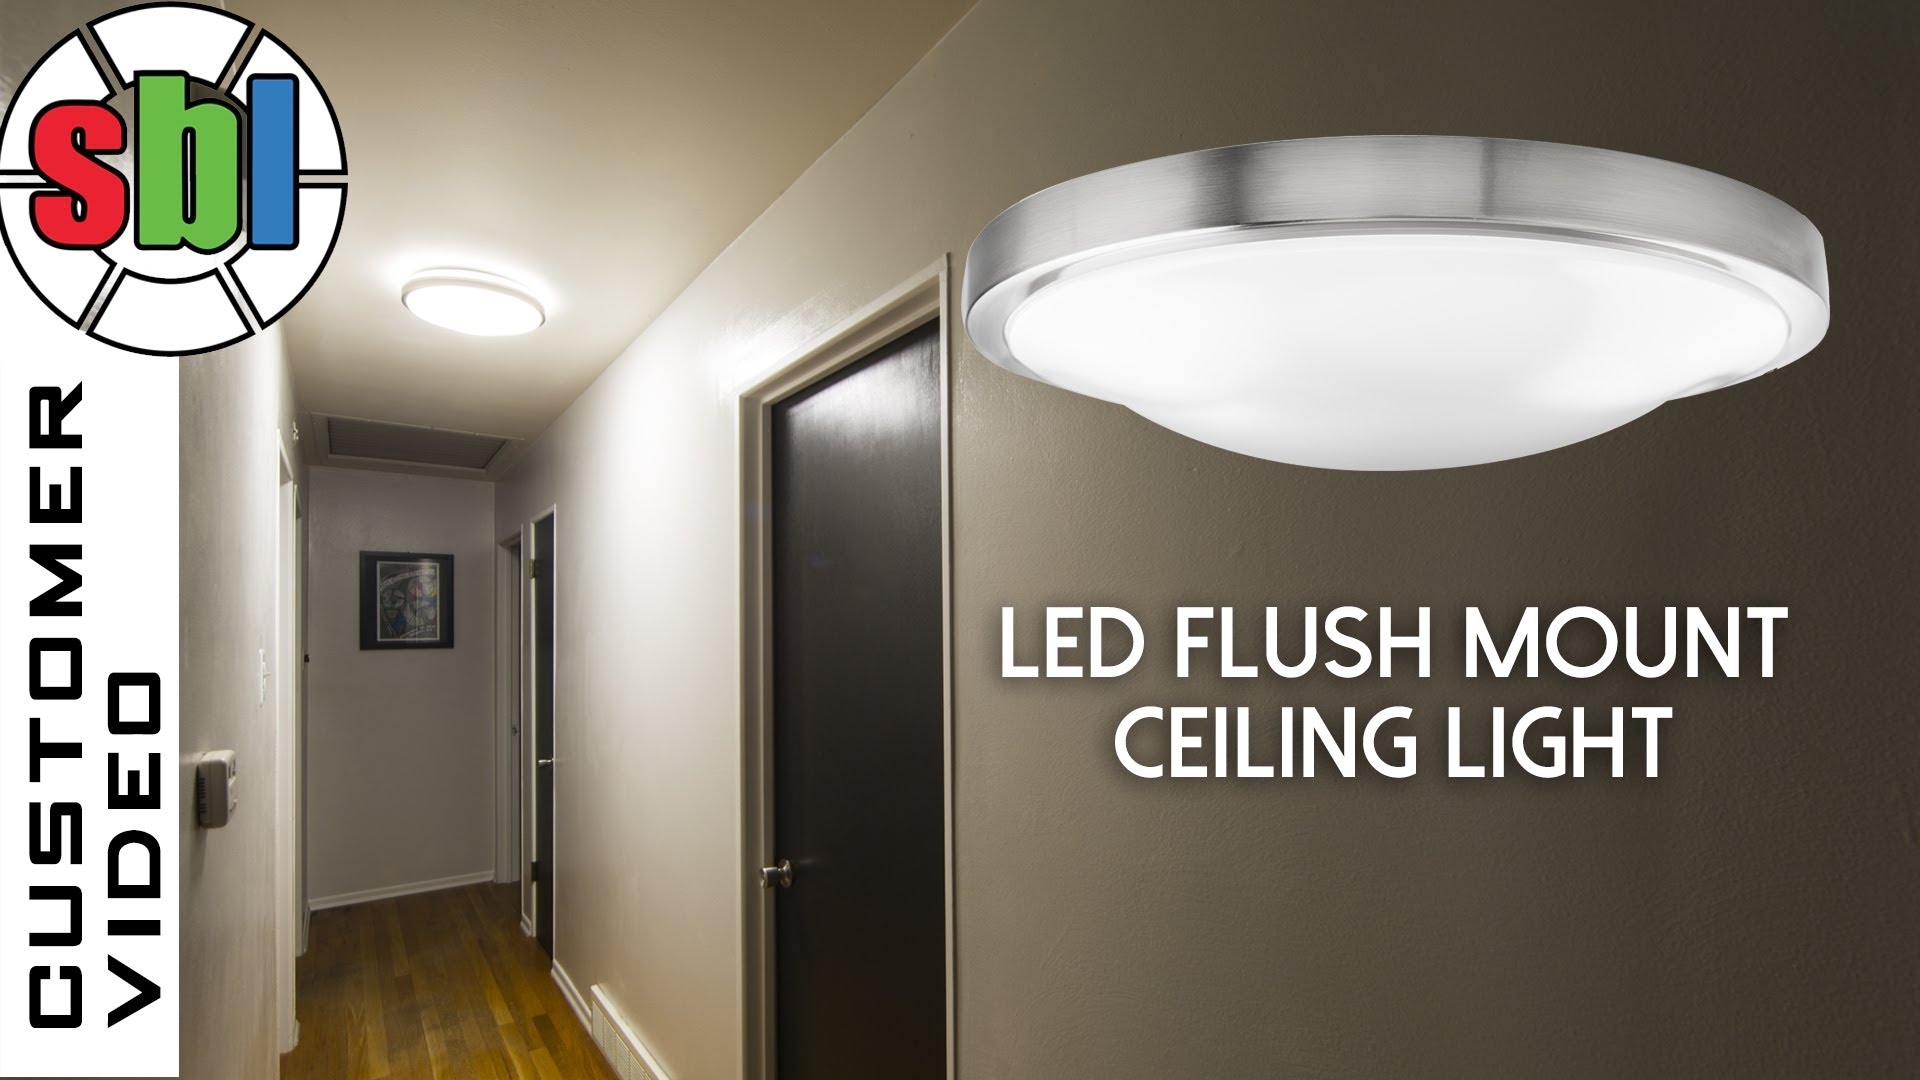 Bright Led Ceiling Light Fixturesled flush mount ceiling light round led flush mount ceiling